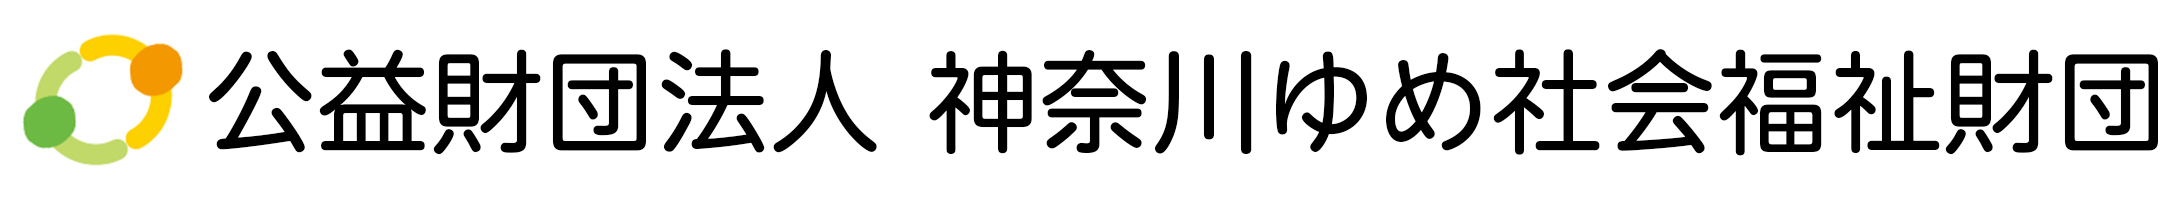 yume-logo